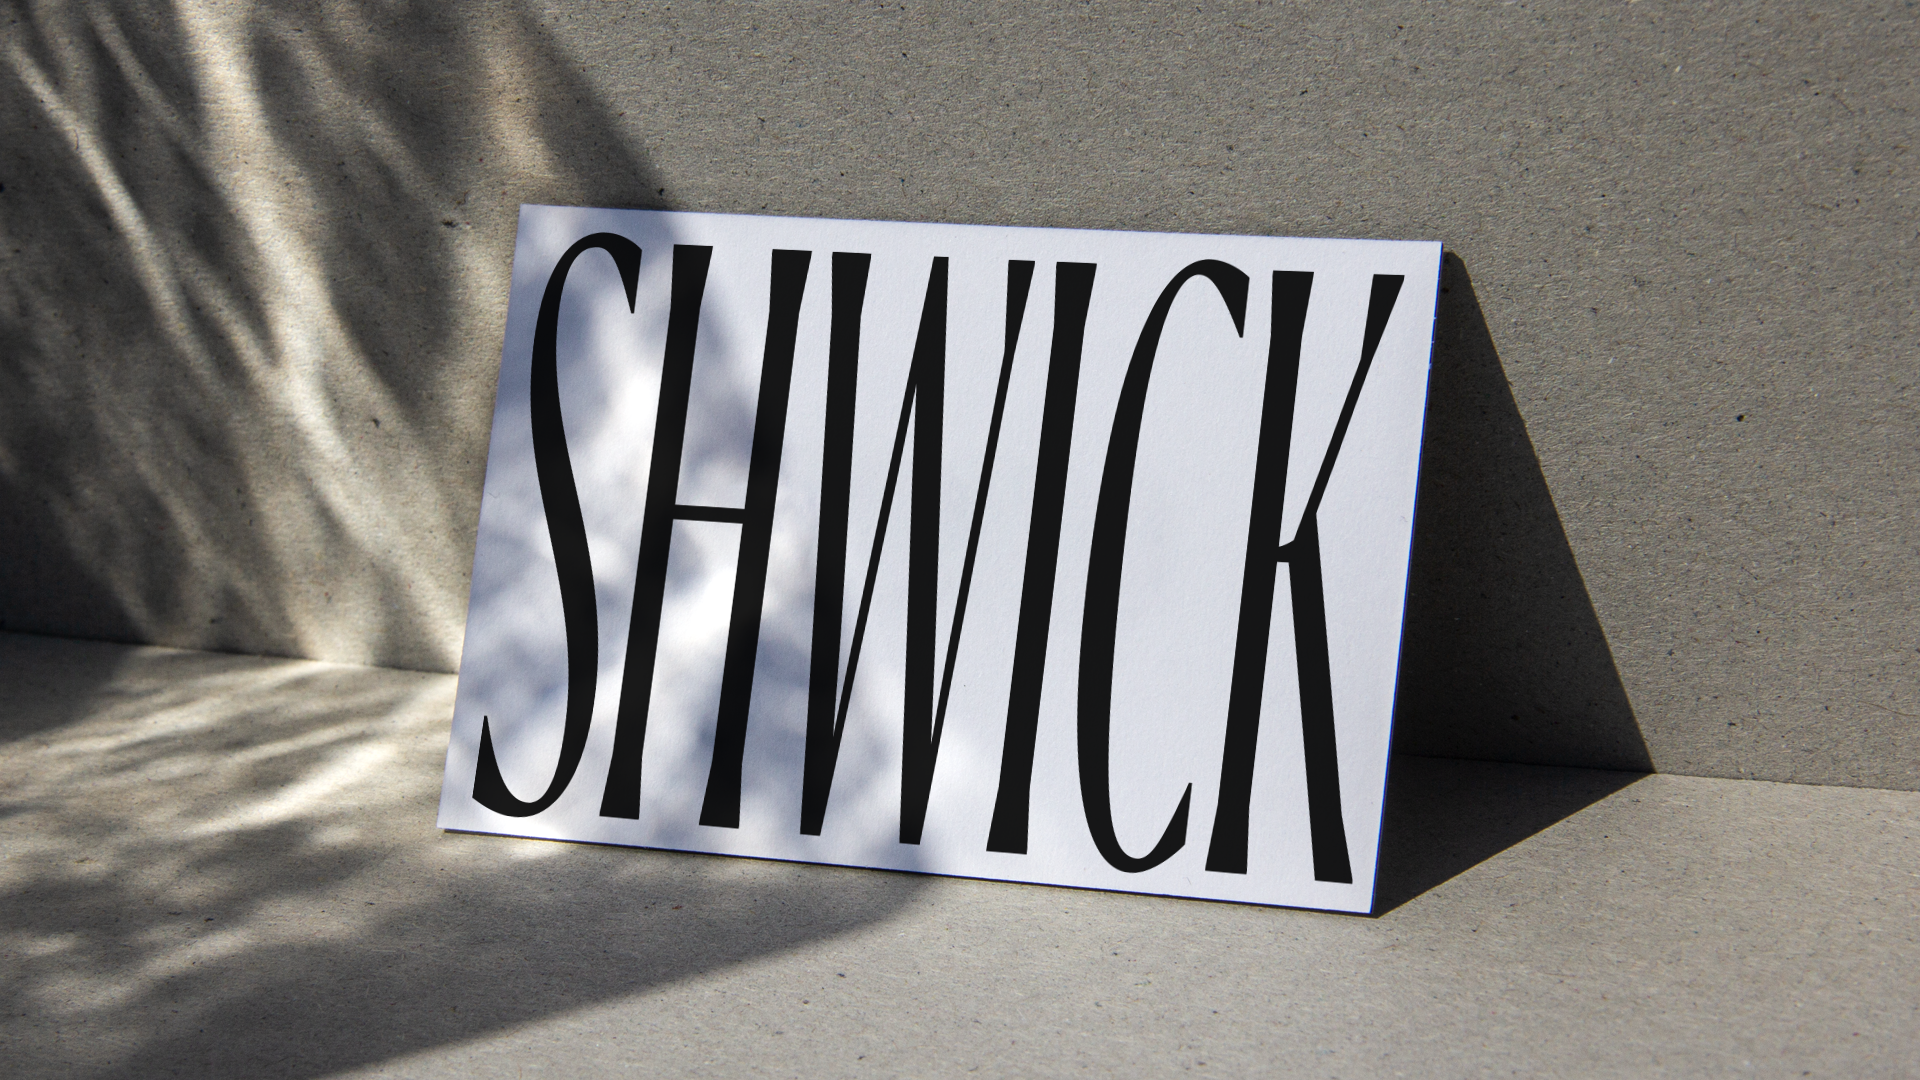 Shwick